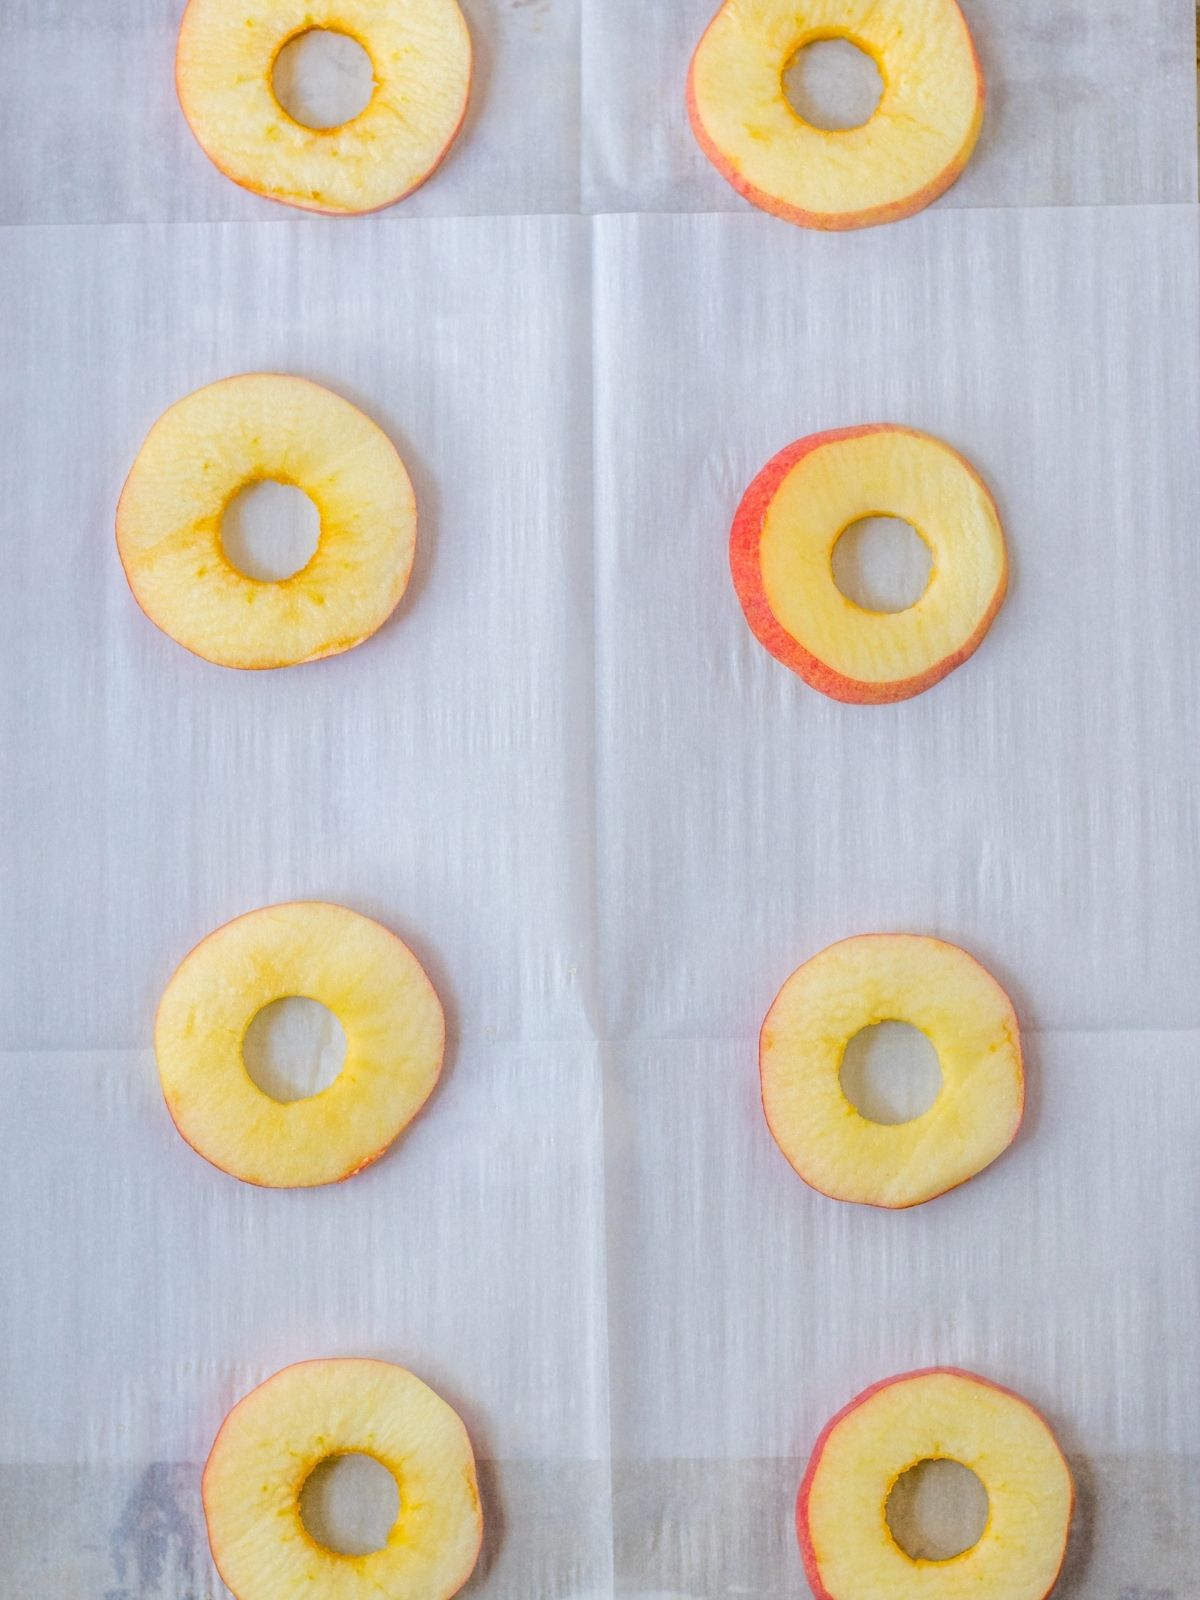 apple slices on parchment paper.